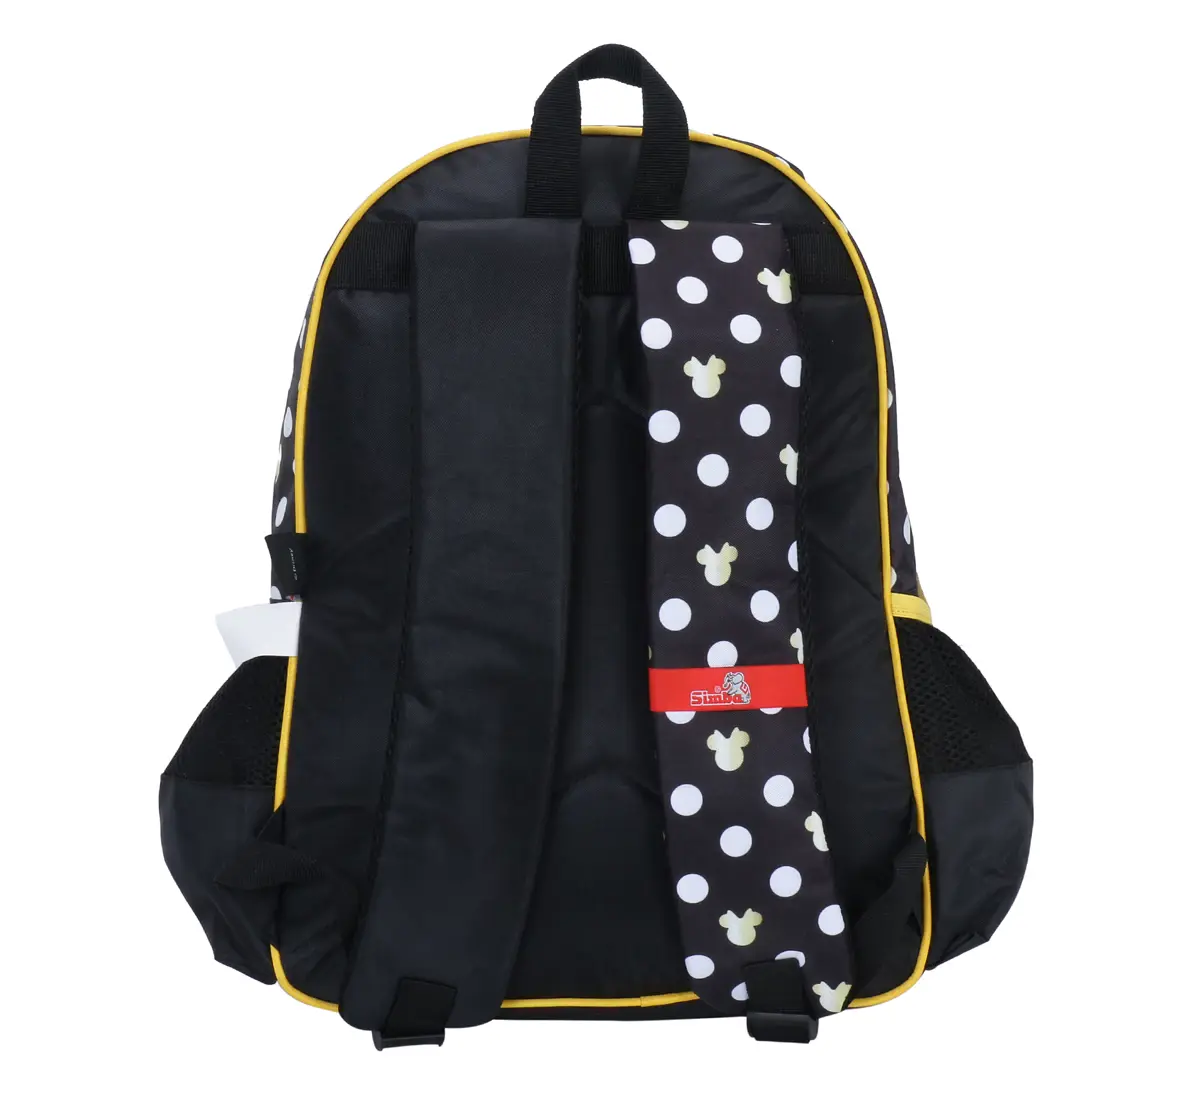 Simba Minnie Paris 16 Backpack Multicolor 3Y+